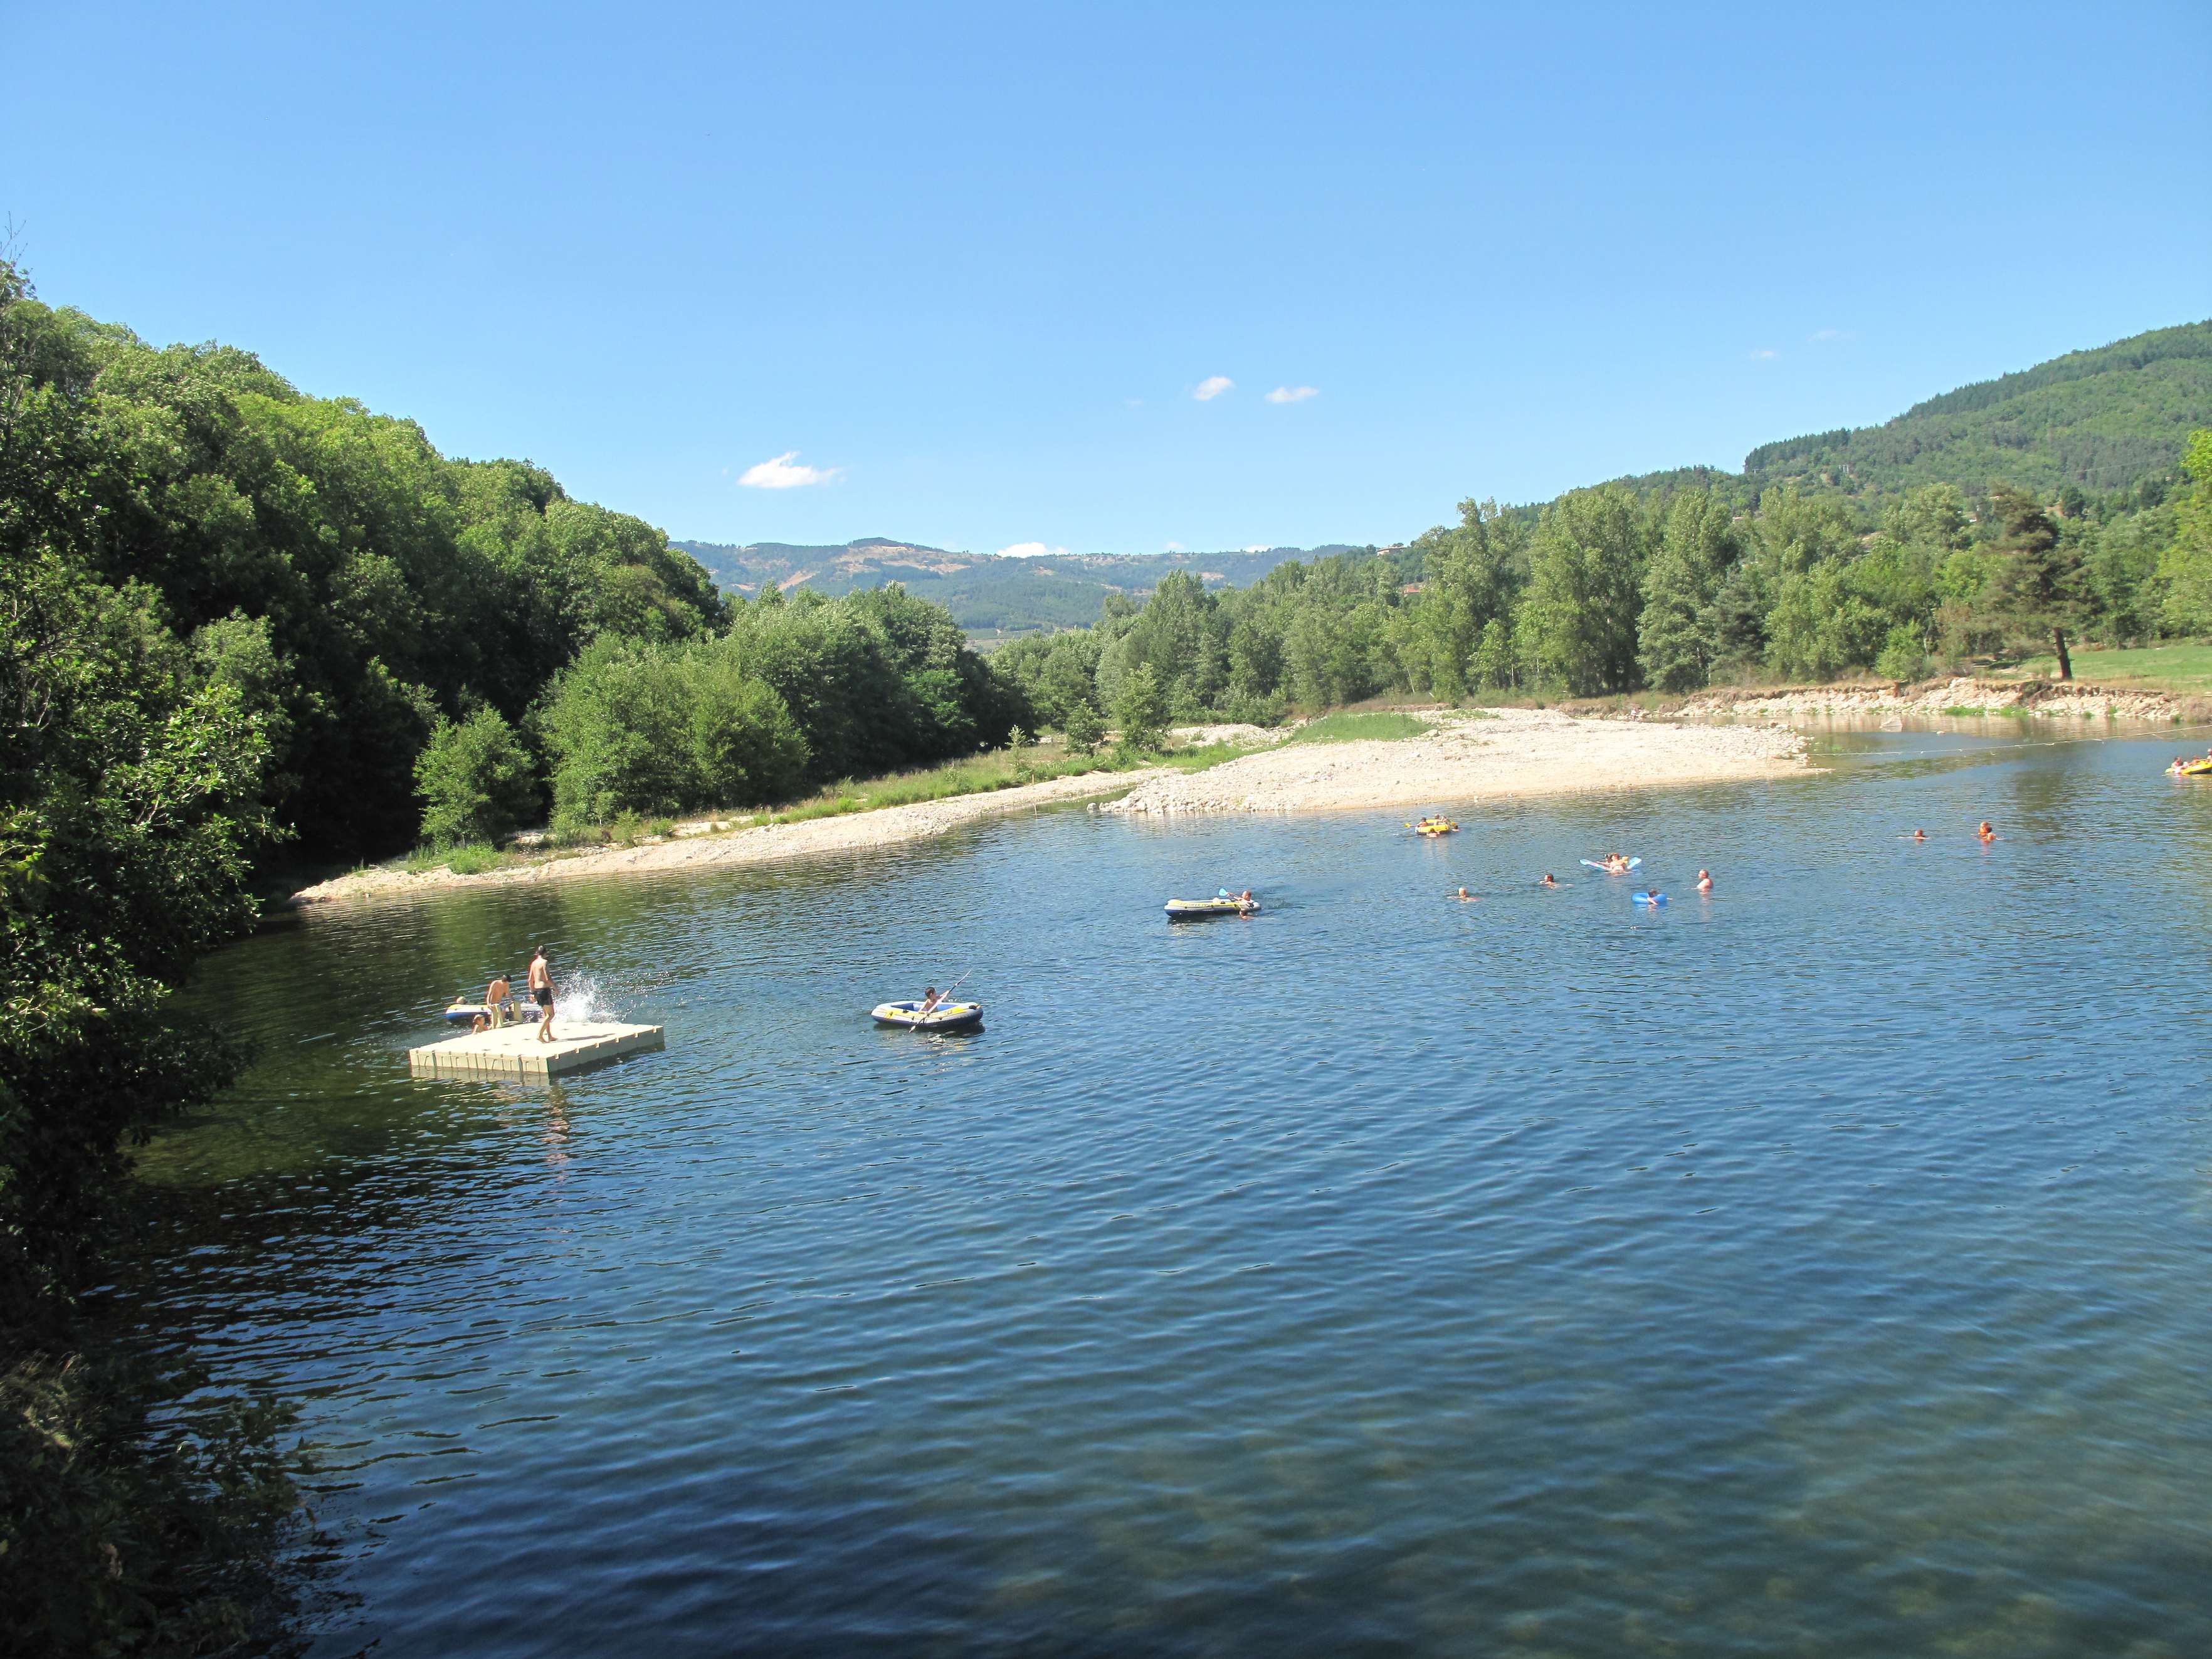 Détendez-vous et profitez des loisirs avec notre sélection d\'activités en plein air. Découvrez des moments uniques au cœur de l\'Ardèche.